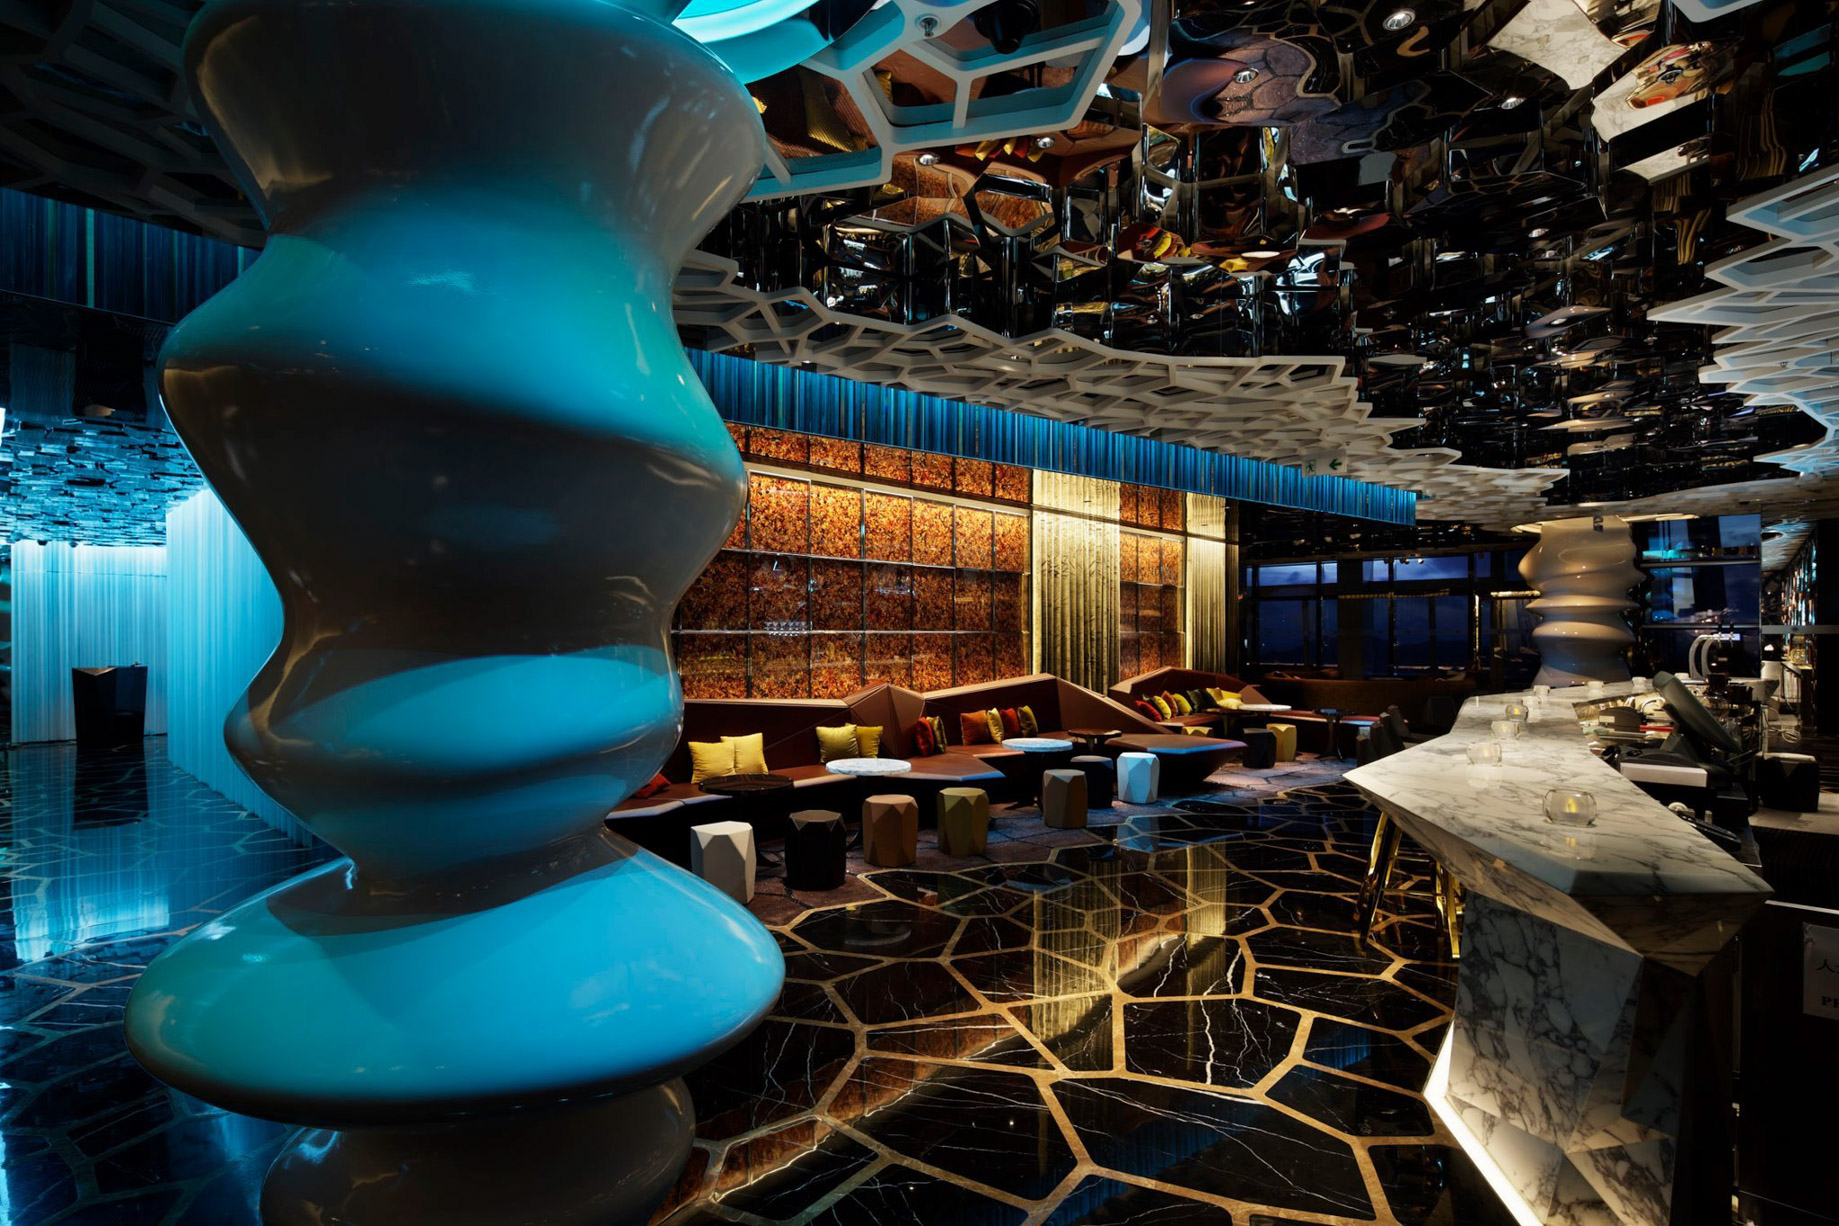 The Ritz-Carlton, Hong Kong Hotel – West Kowloon, Hong Kong – Ozone Bar Interior